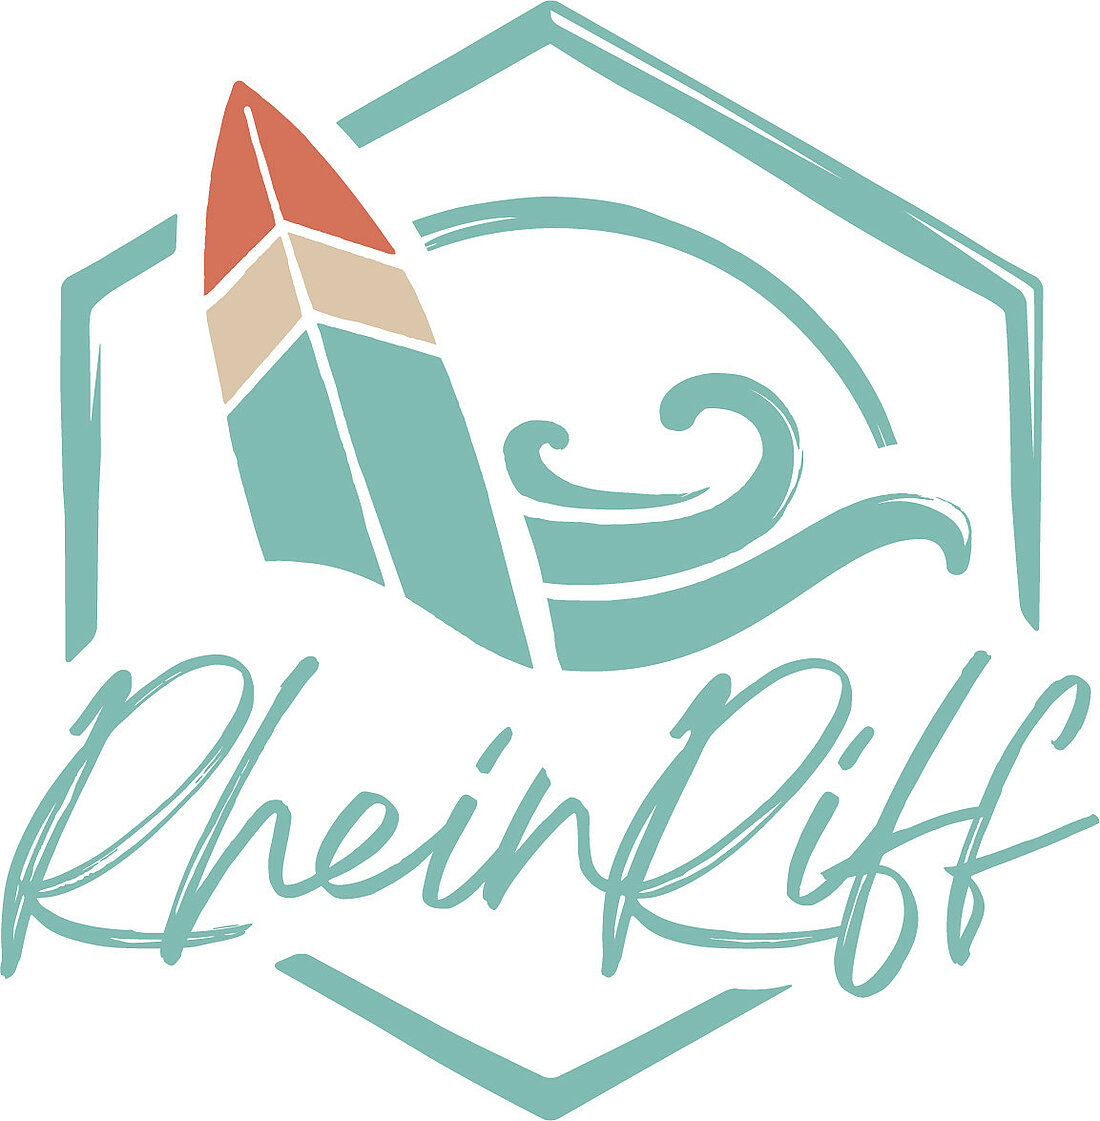 Man sieht das Logo von RheinRiff